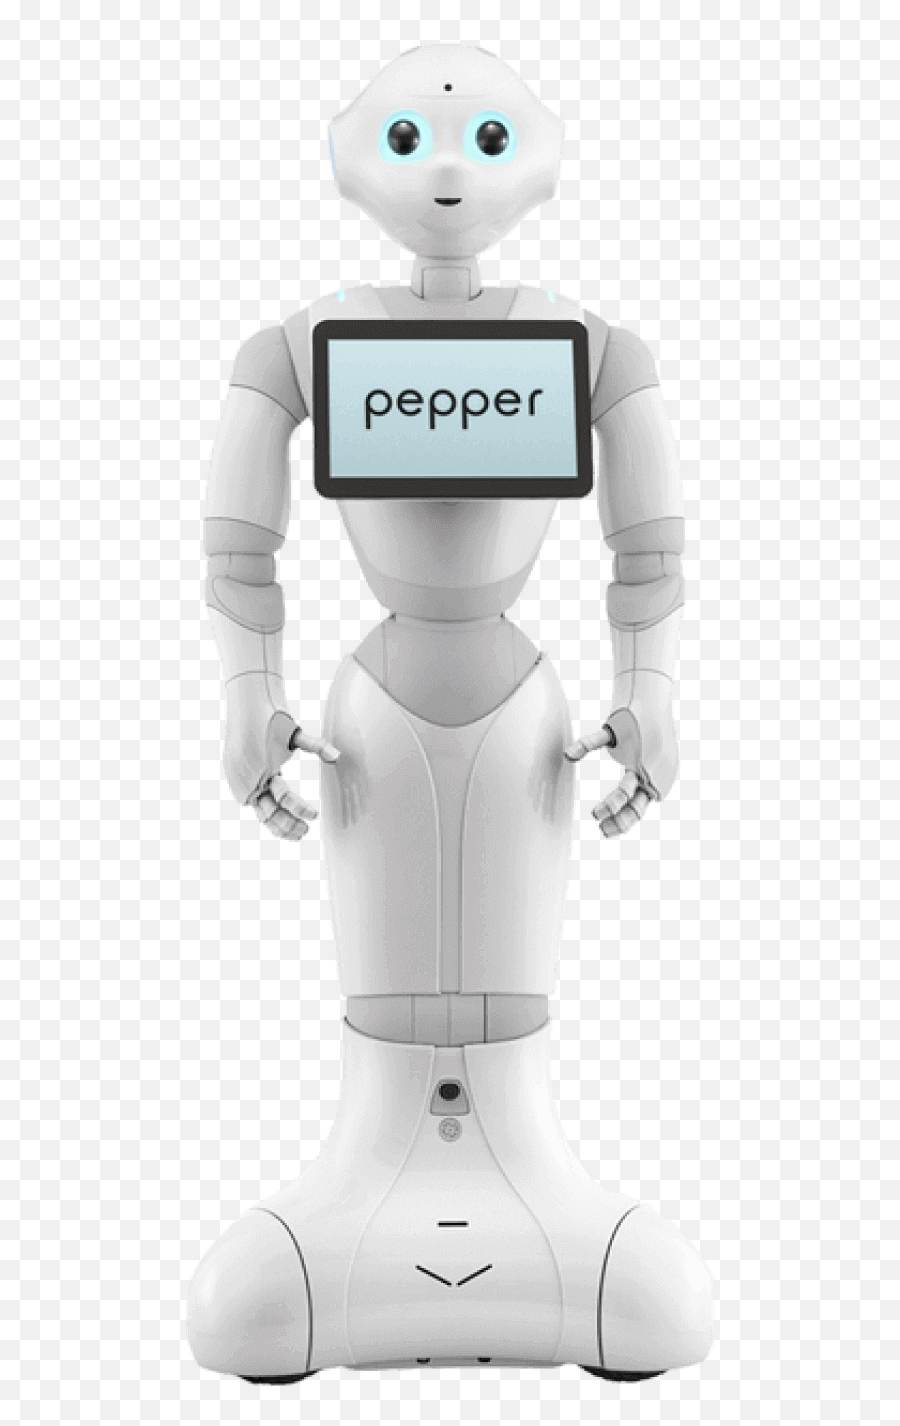 Pepper Robot For Rent - Pepper Robot Design Emoji,Robots With Emotions